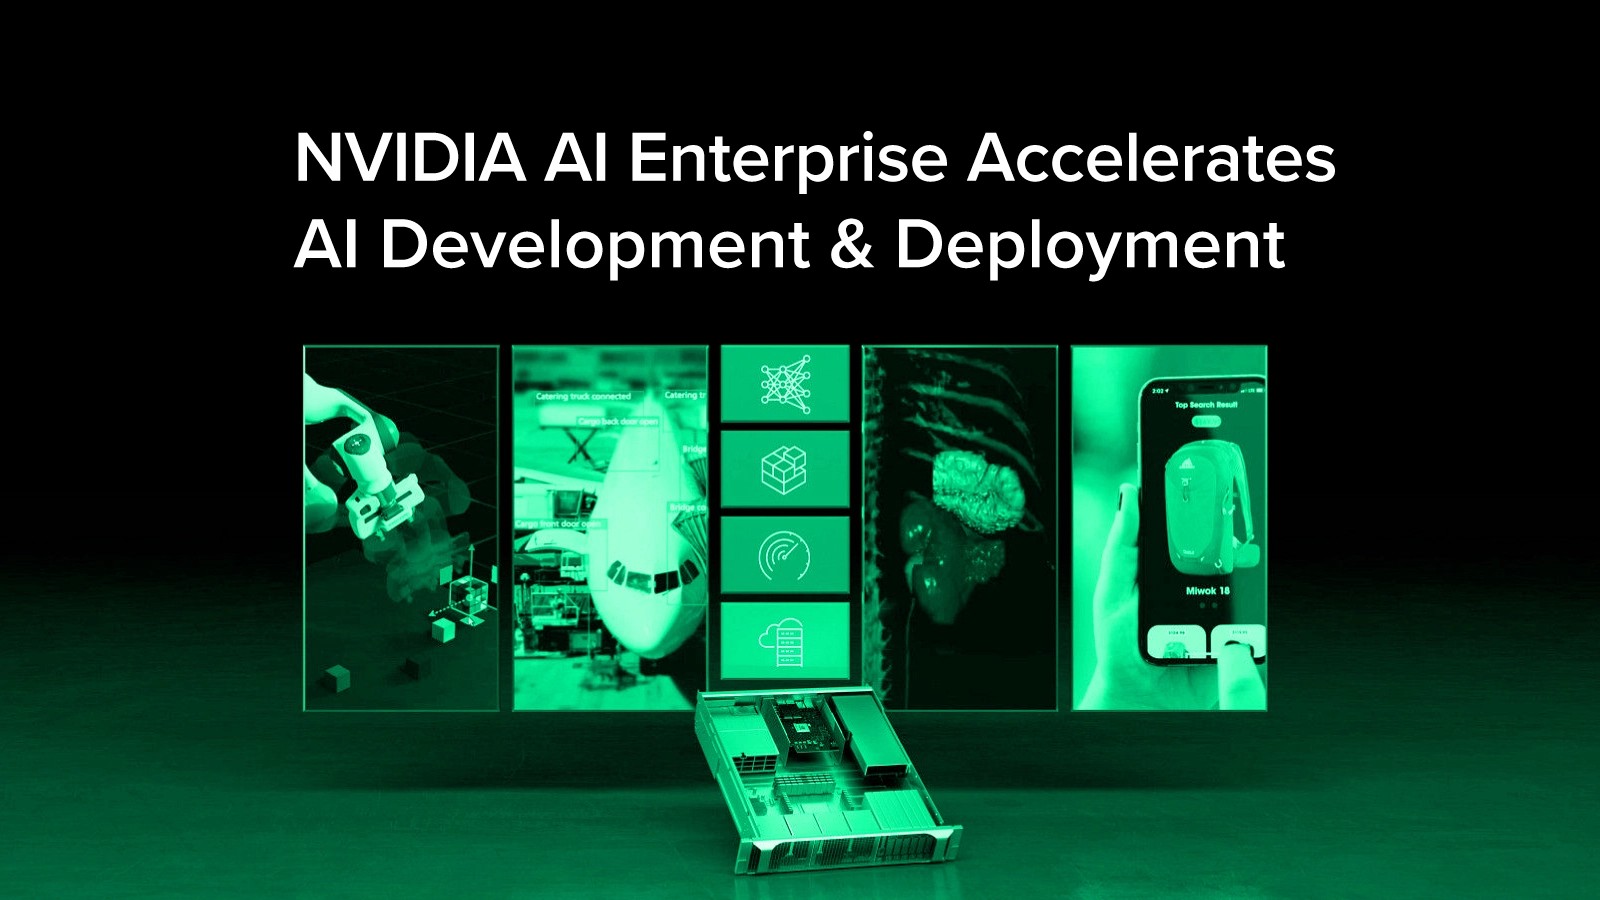 Phiên bản mới nhất của NVIDIA AI Enterprise tăng tốc quy trình phát triển và triển khai AI